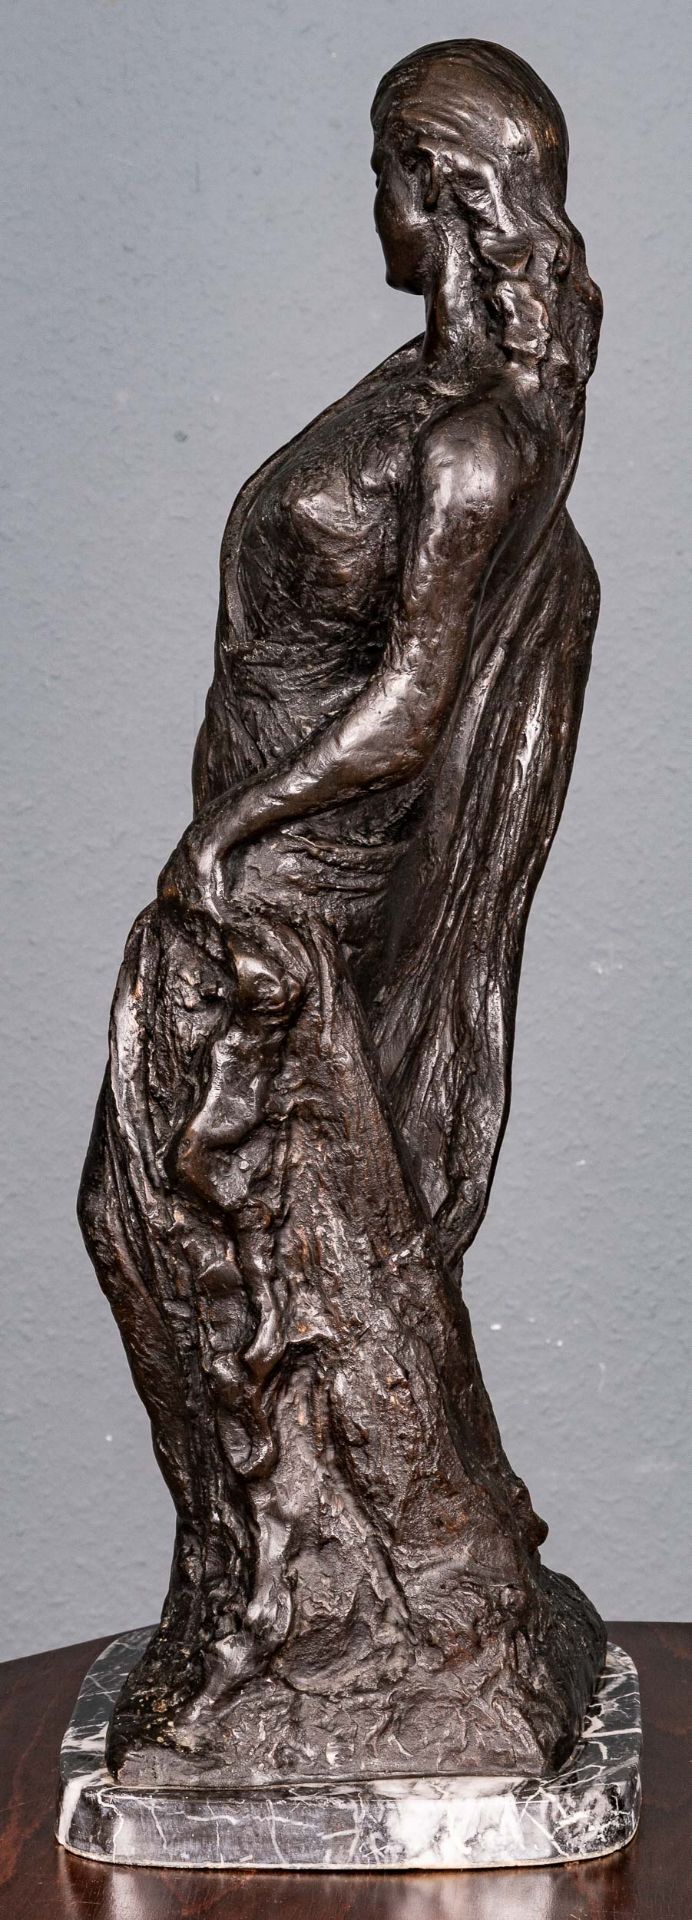 "Stehende junge Dame", schwarzbraun patinierter Bronzeguss, auf grauweiß geadertem, schwarzem Marmo - Bild 7 aus 17